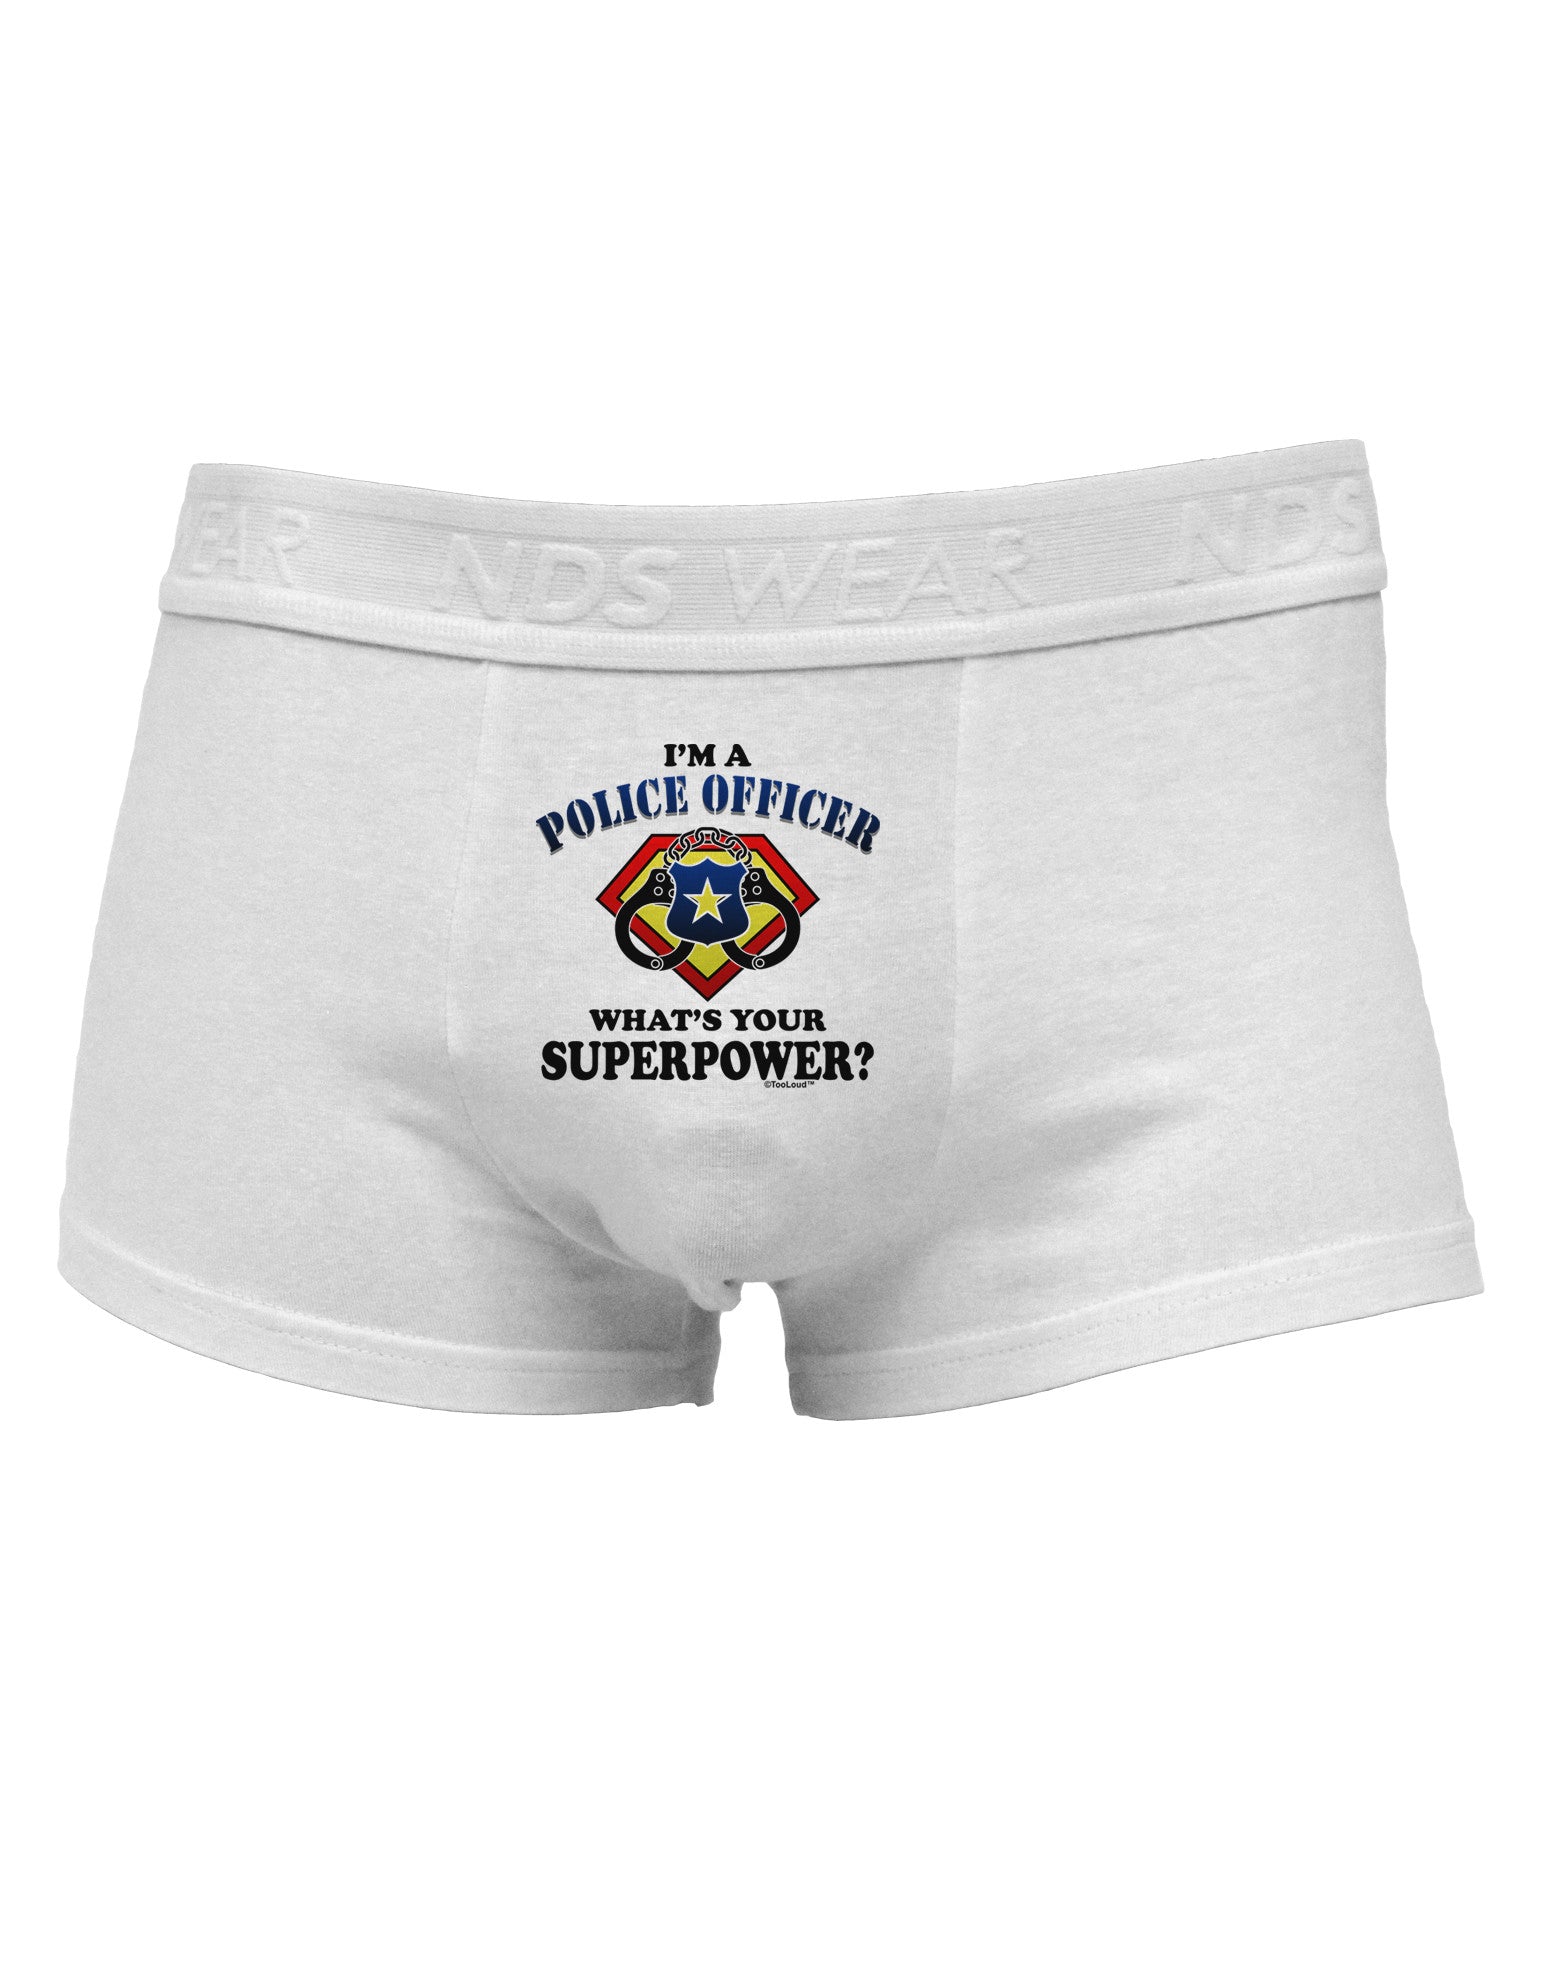 Police Officer - Superpower Mens Cotton Trunk Underwear - Davson Sales